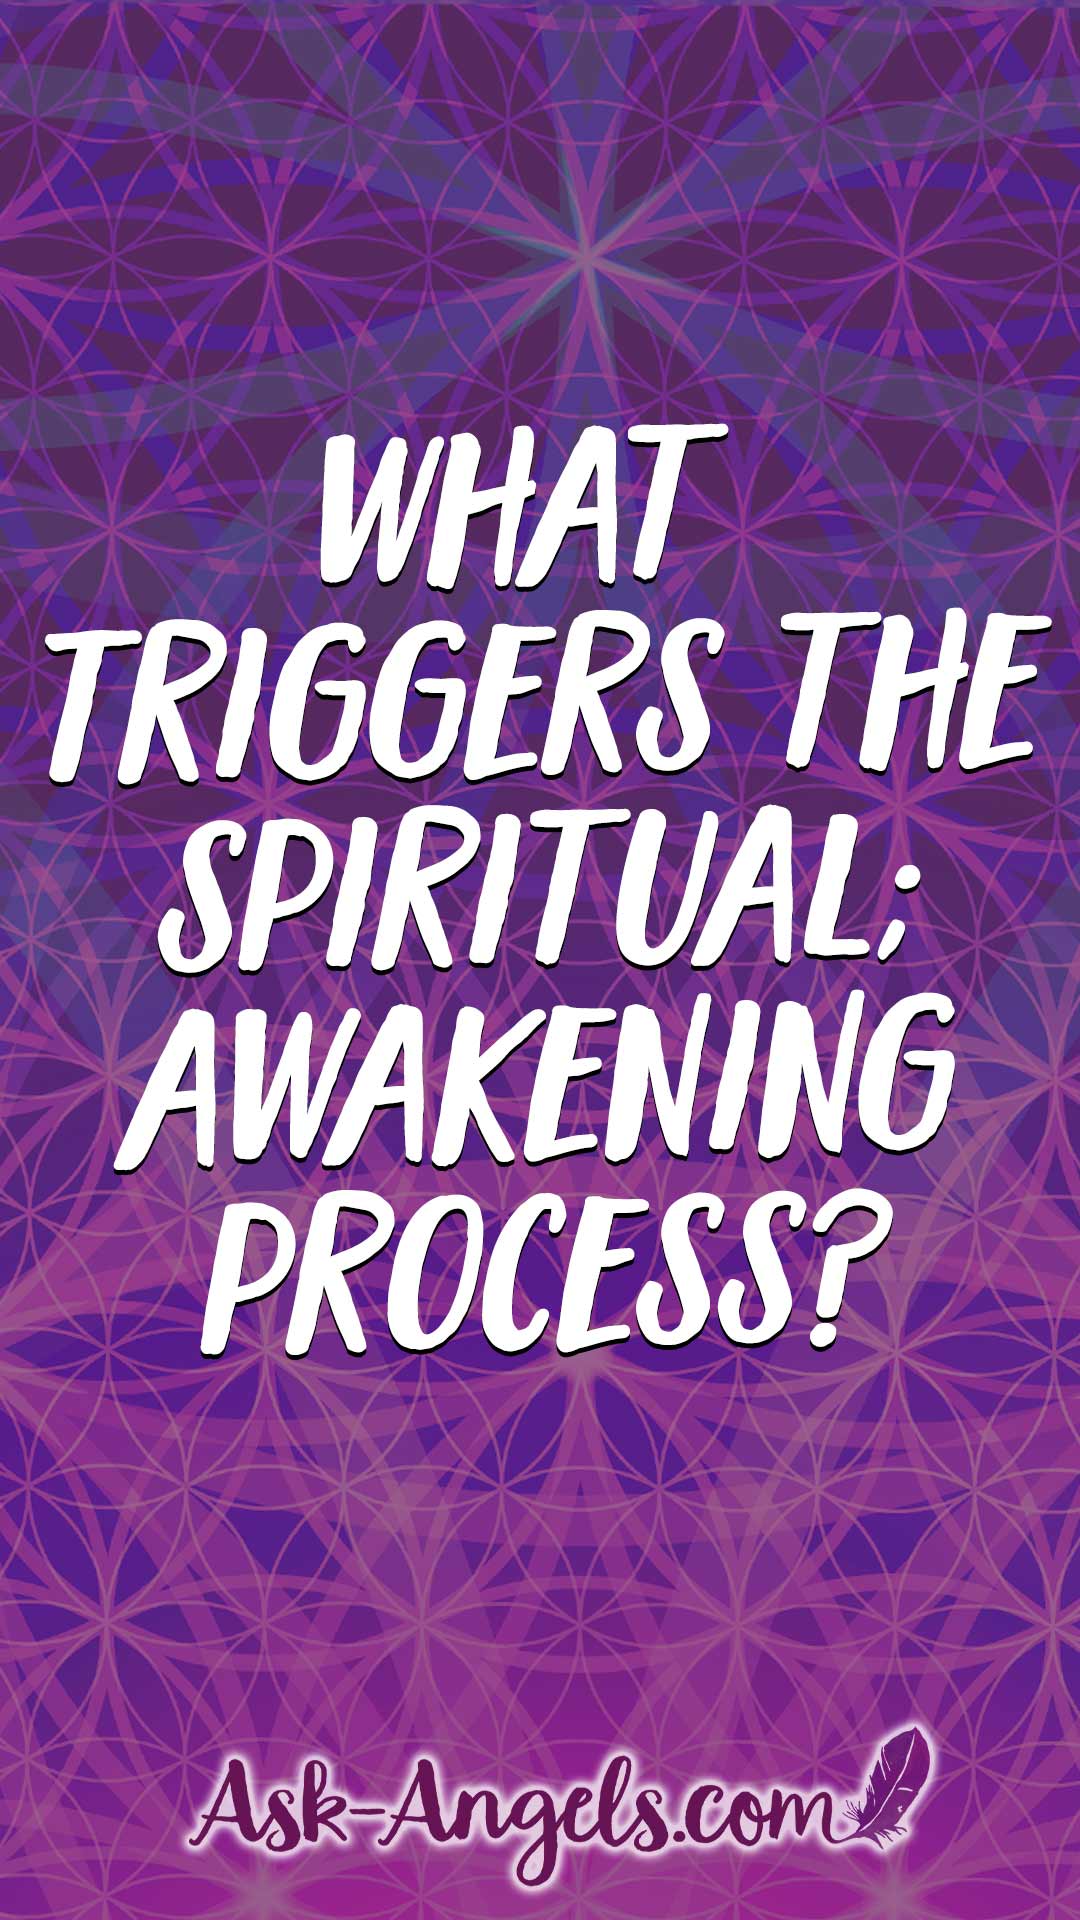 What triggers the spiritual awakening process?